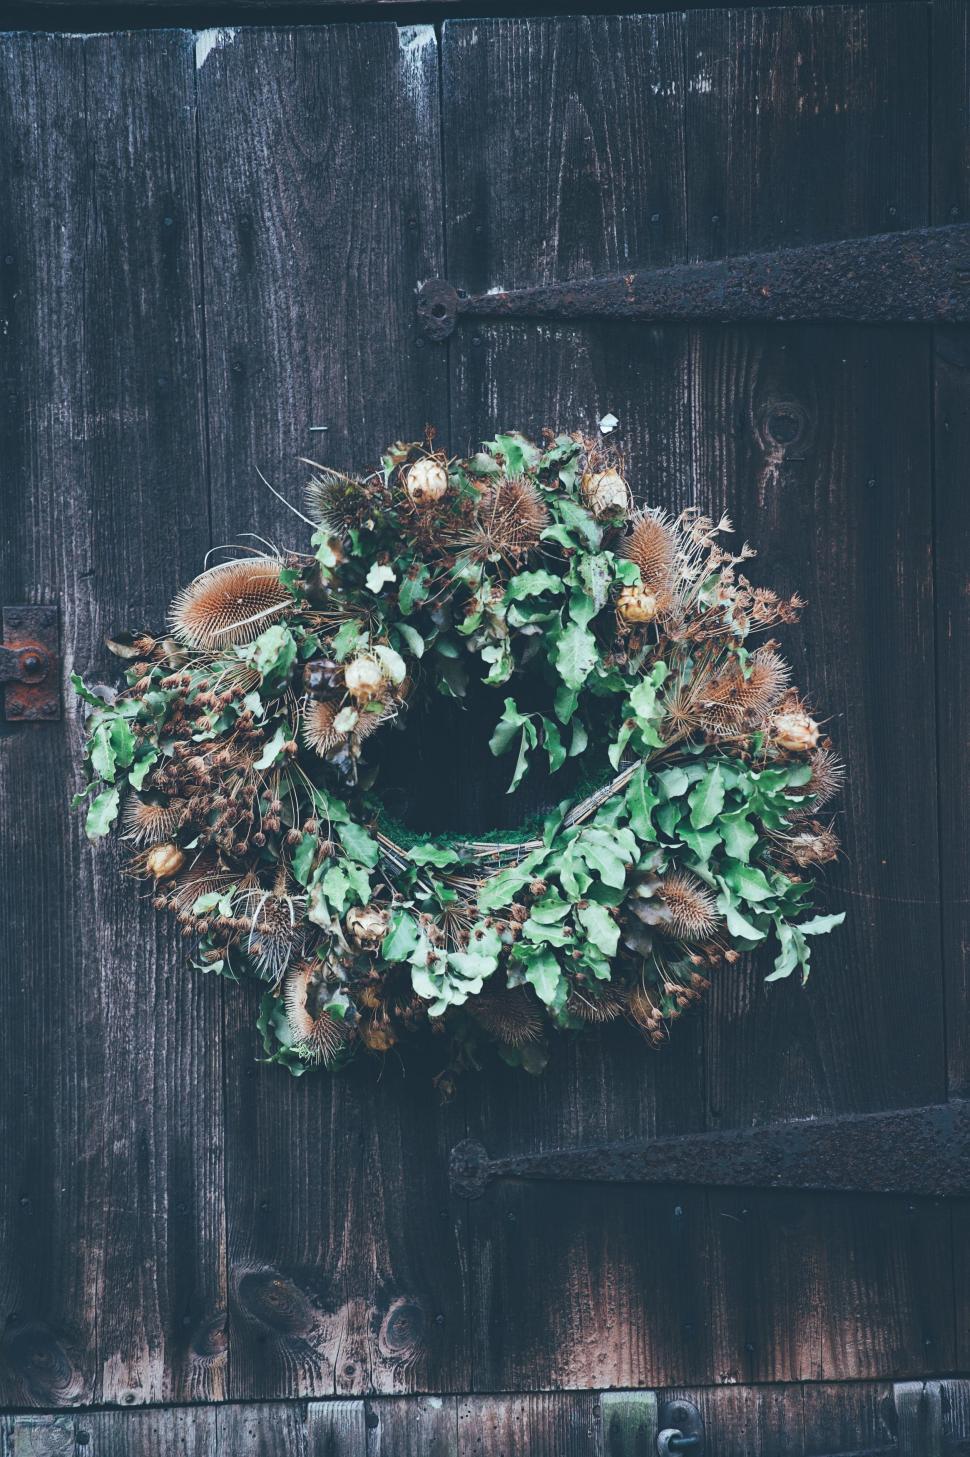 Free Image of Wreath Hanging on Wooden Door 